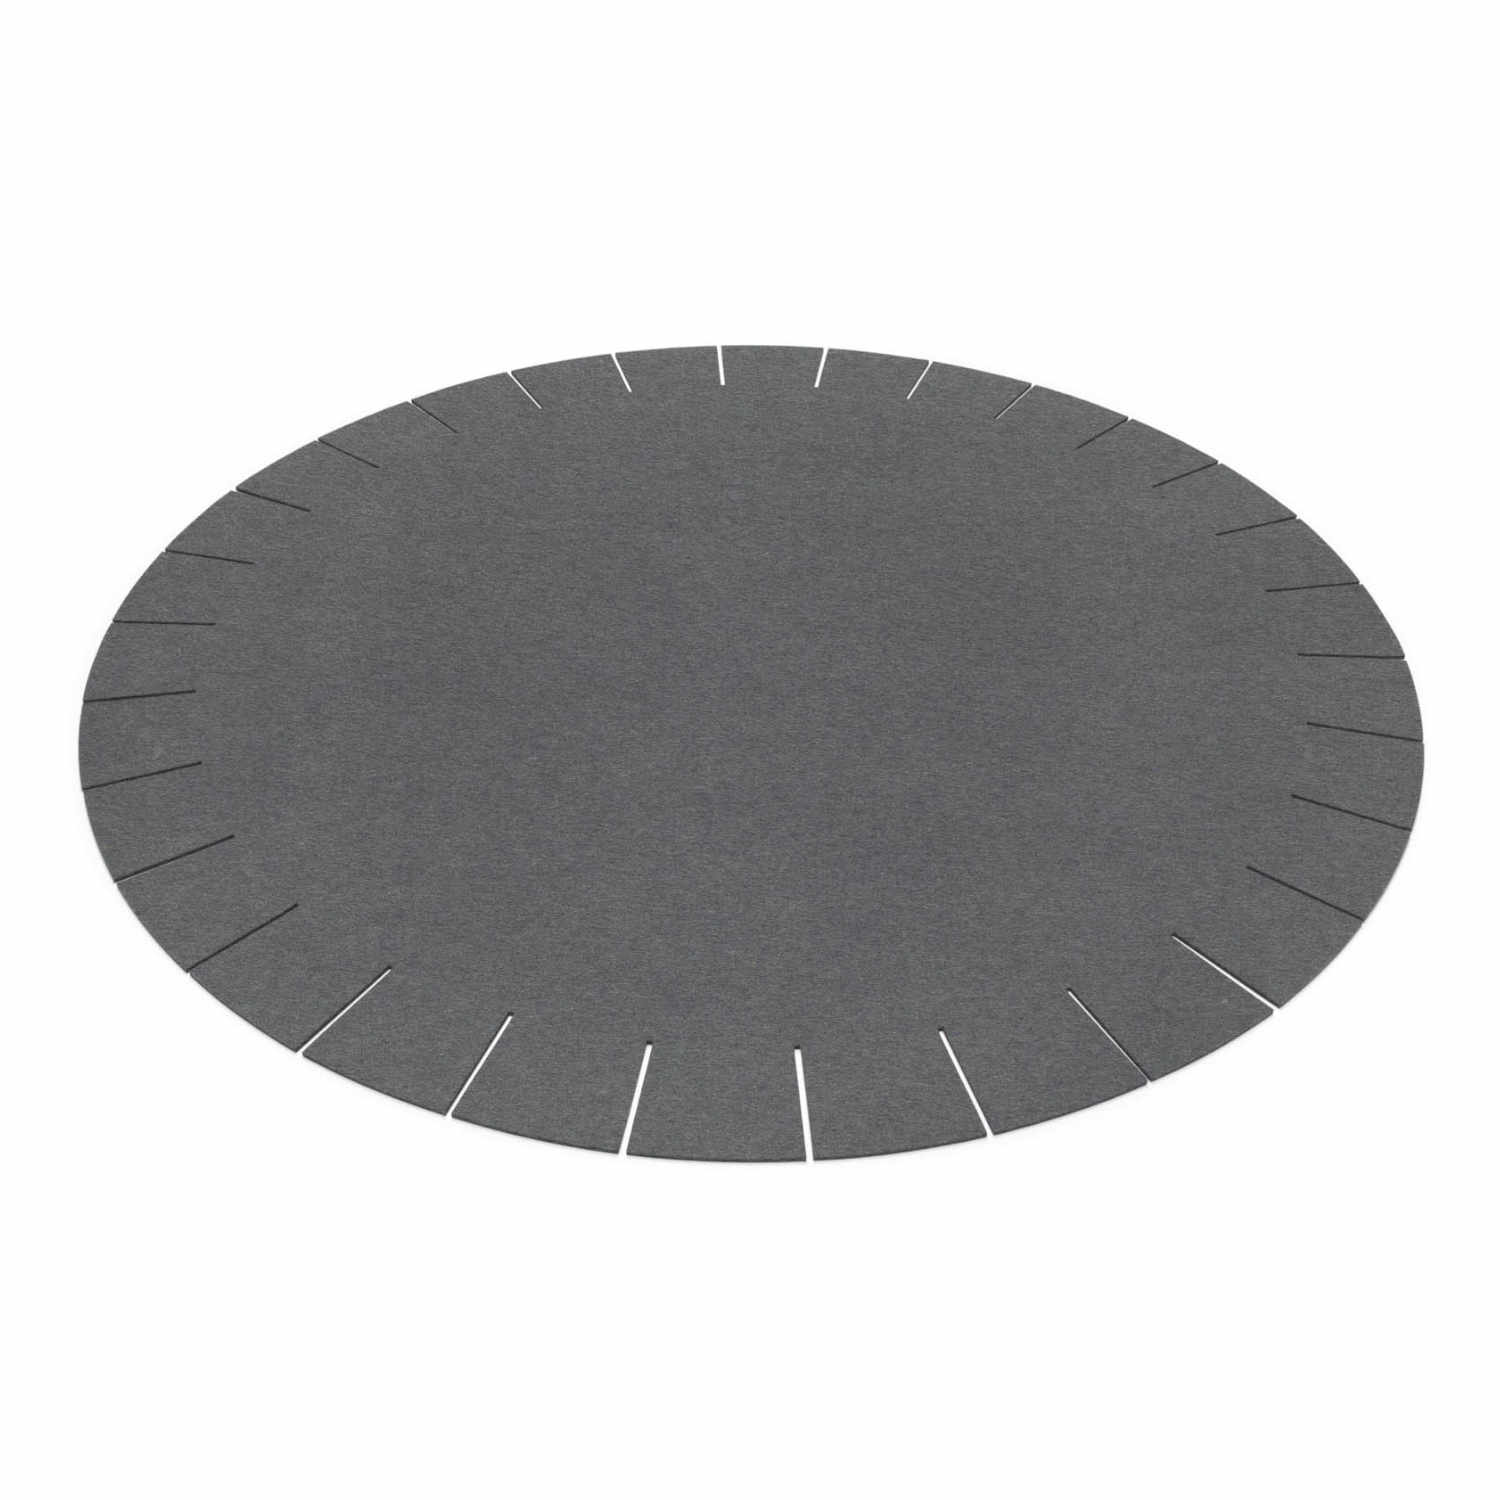 Franse rund Teppich, Farbe graphit, Durchmesser 120 cm von HEY-SIGN